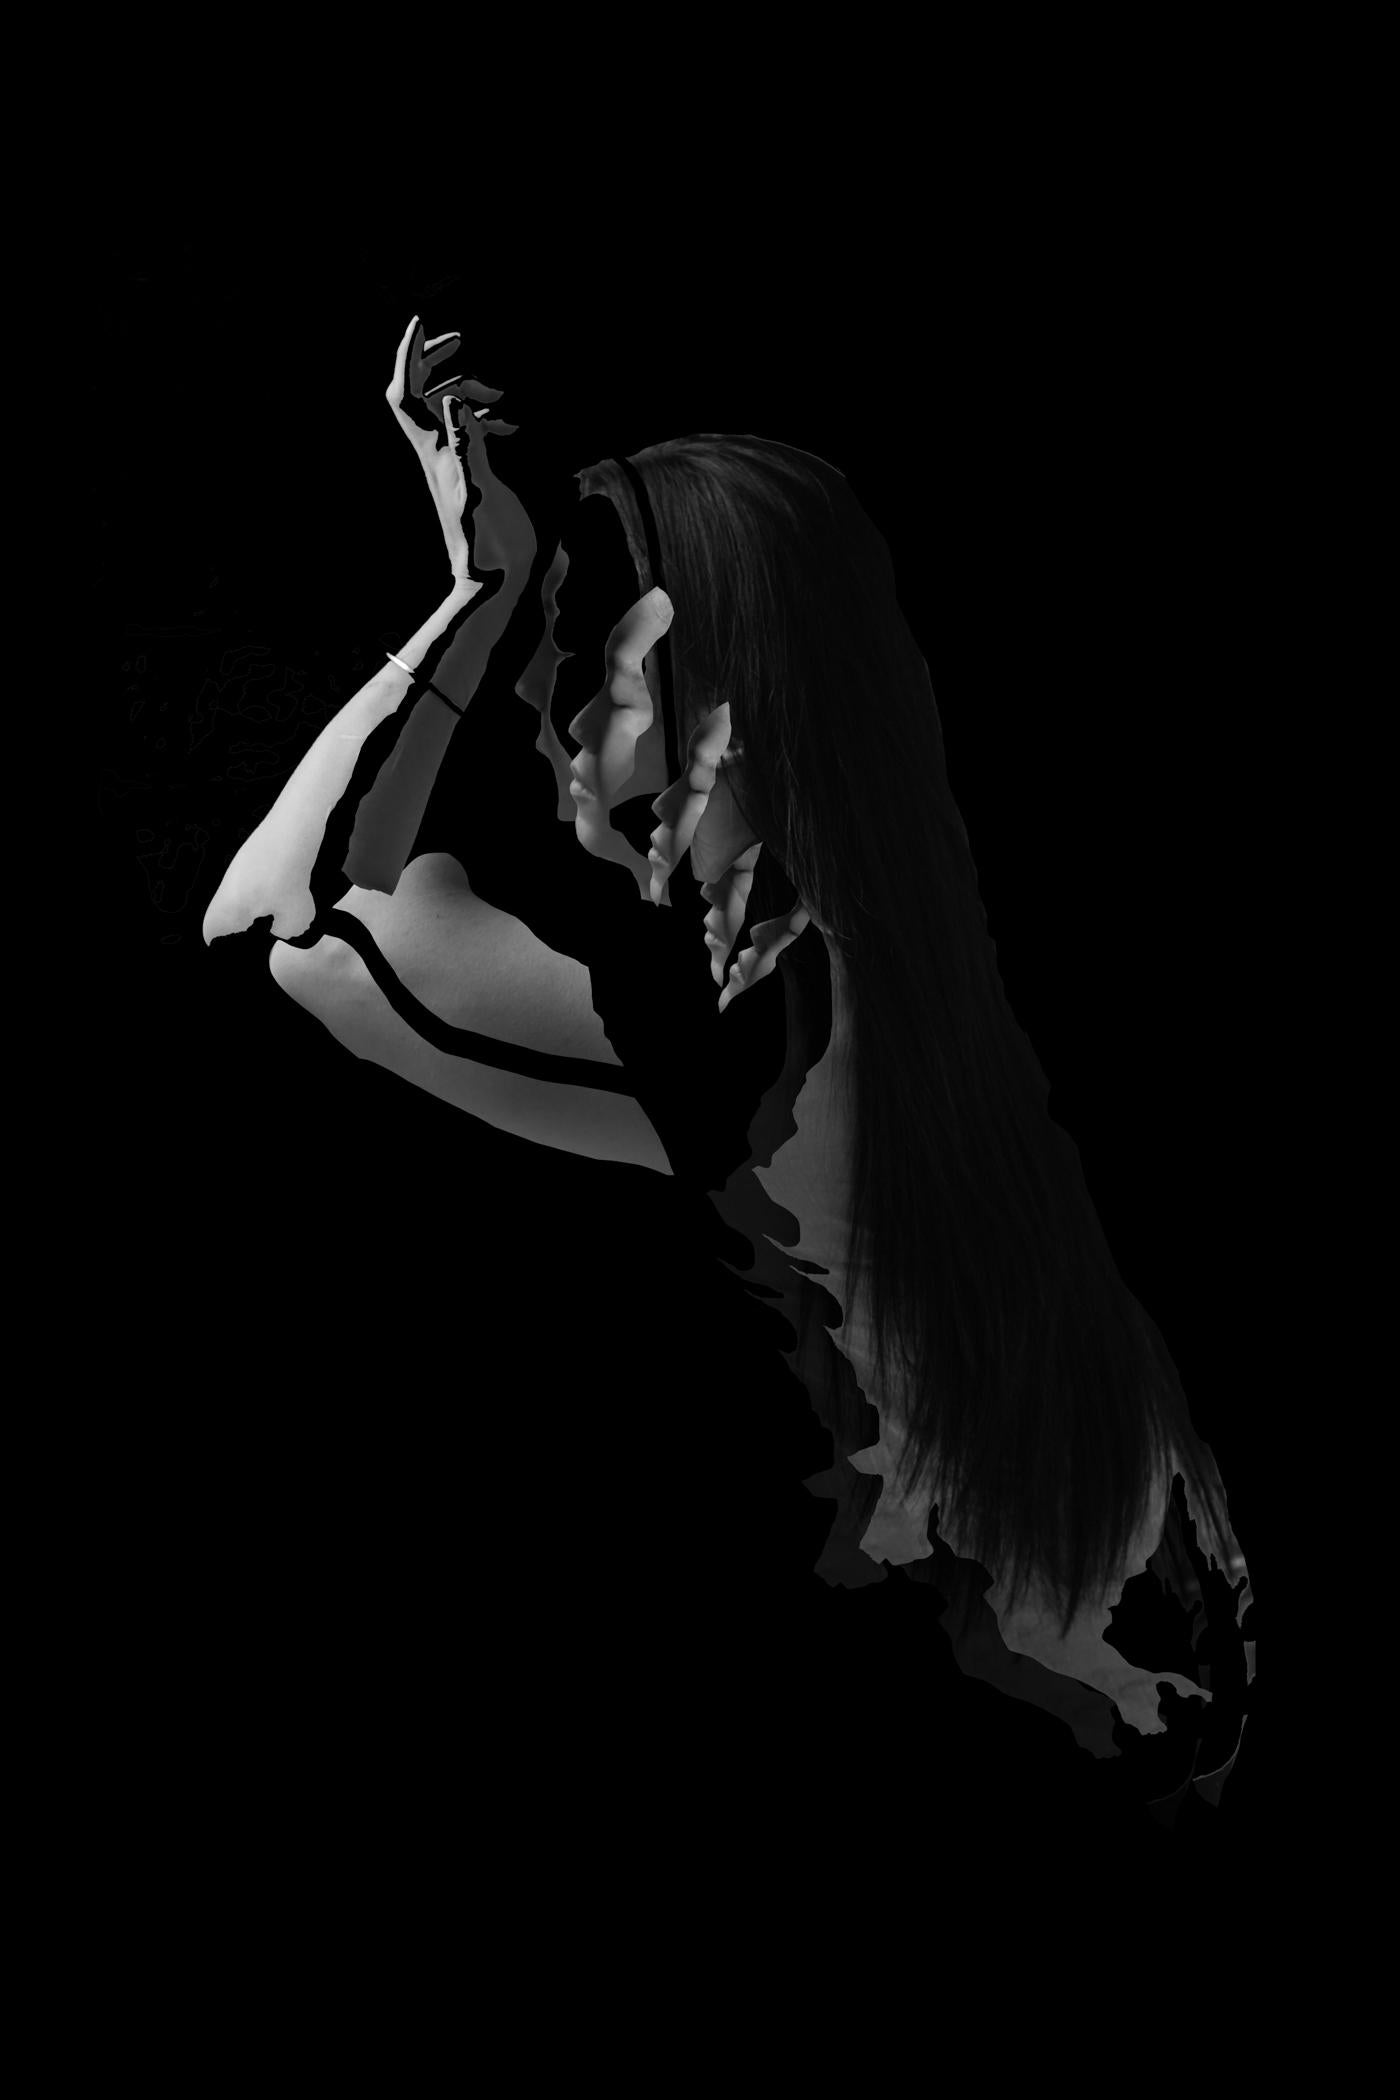 Black and White Photograph Ying Chen - Fragmentée - Sans titre 1. Photographie figurative abstraite B & W en édition limitée